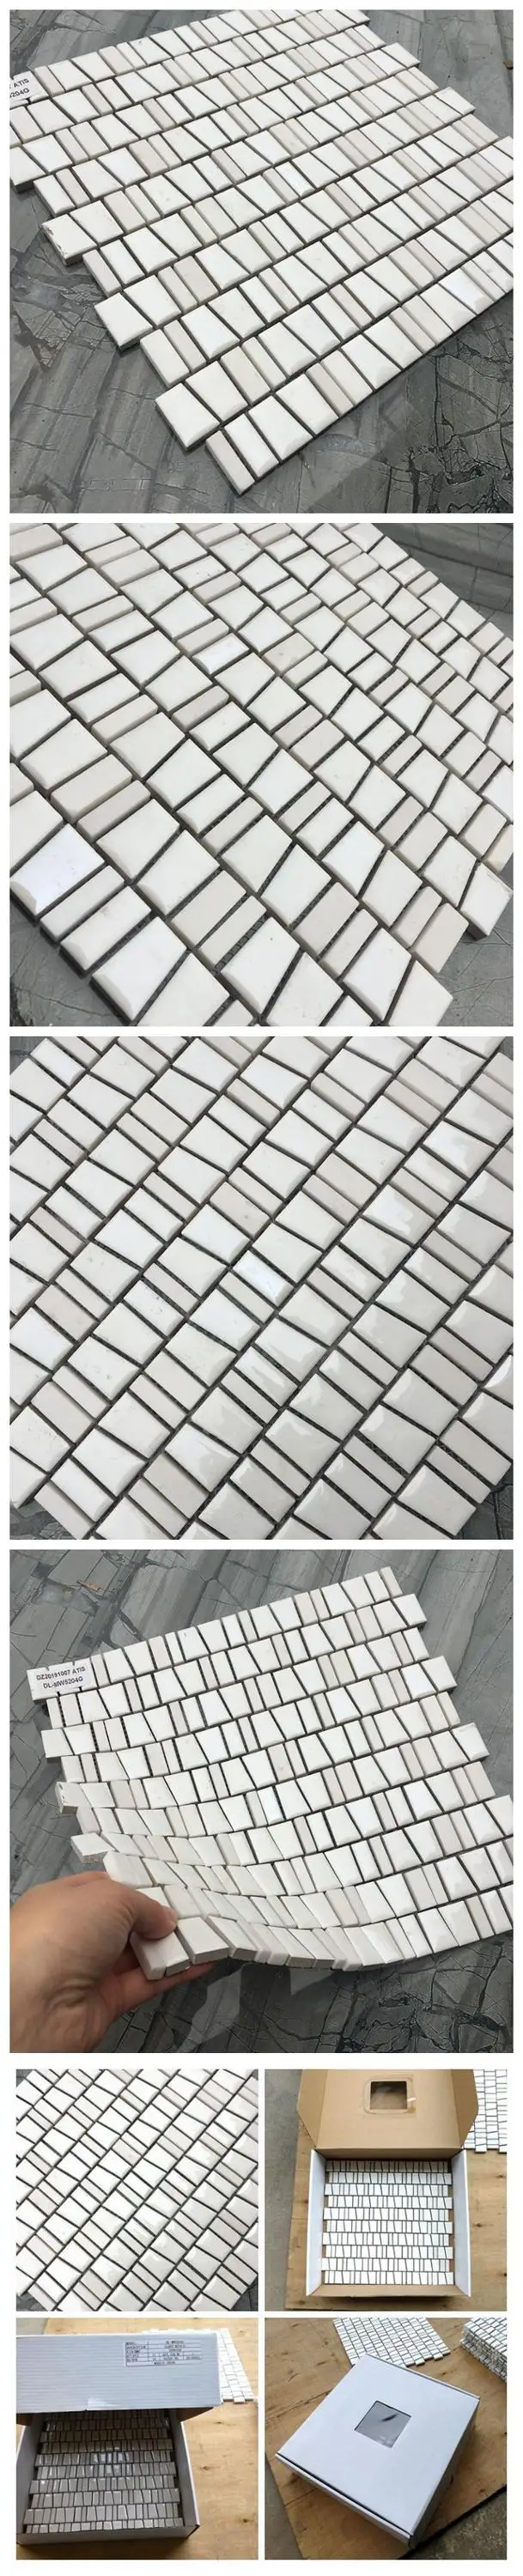 Venda imperdível telha de mosaico de cerâmica e pedra branca para banheiro e cozinha Foshan China